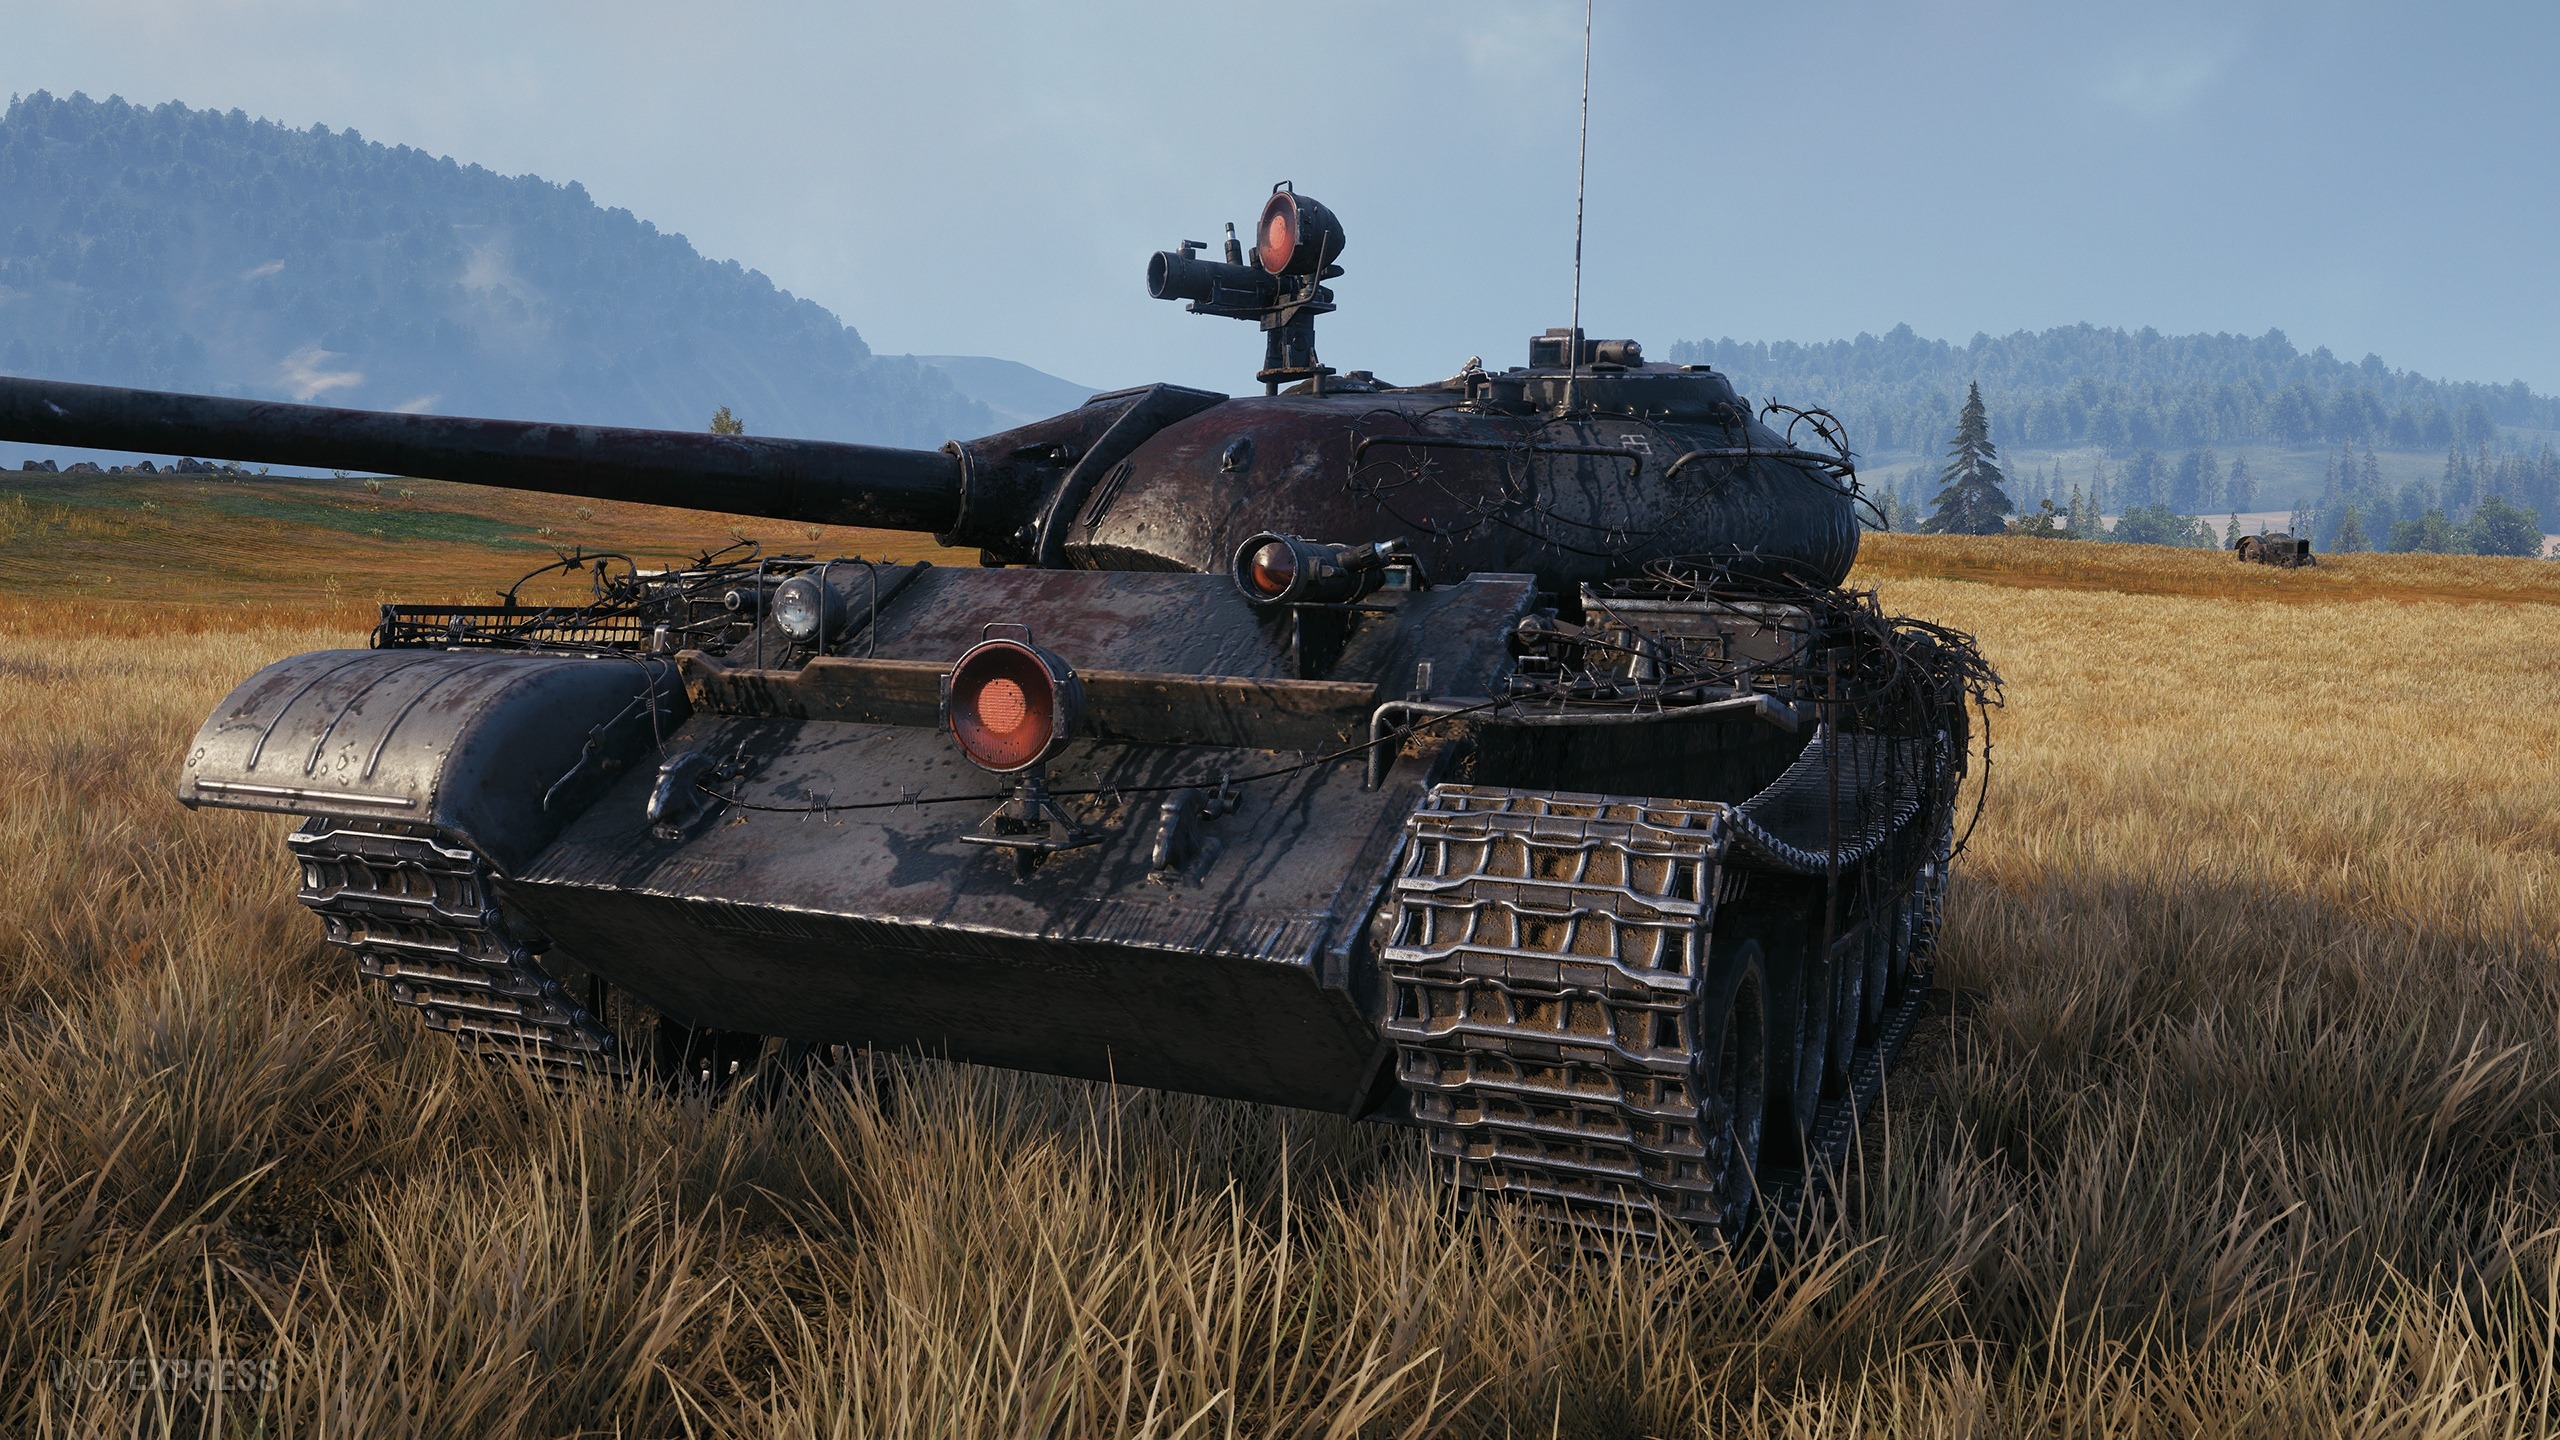 Wot 54. Т-54 World of Tanks. Т54 блиц. Т 54 Tanks Blitz. Т54 танк World of Tanks Blitz.